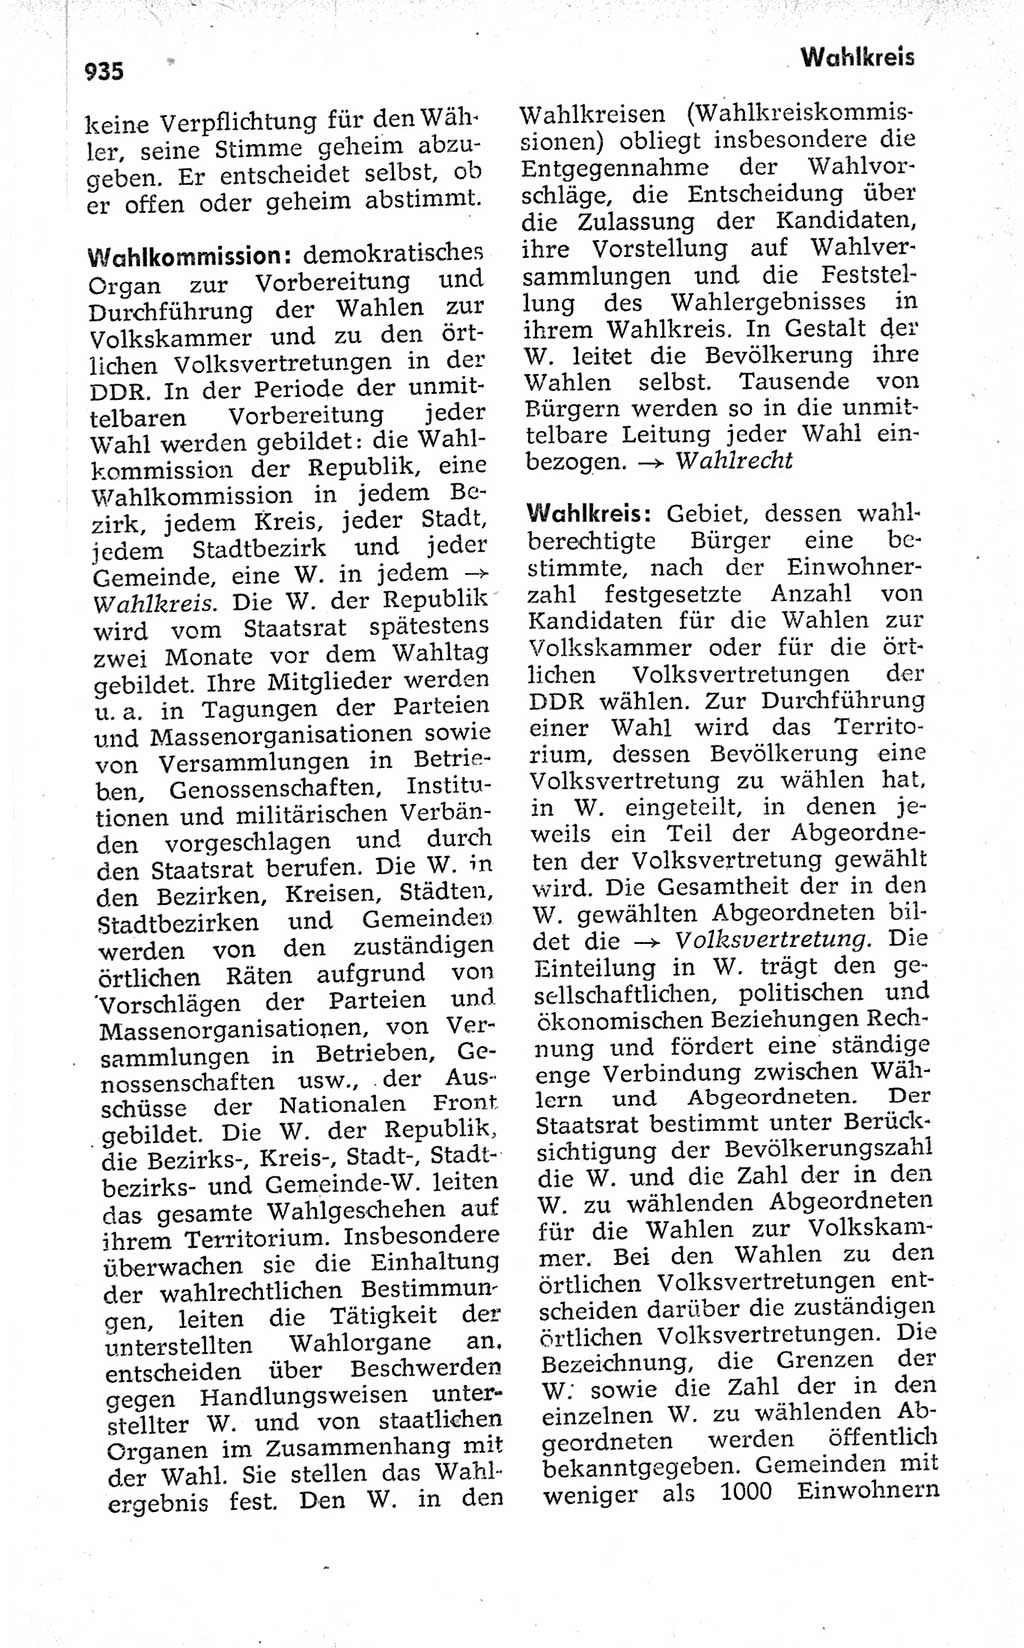 Kleines politisches Wörterbuch [Deutsche Demokratische Republik (DDR)] 1973, Seite 935 (Kl. pol. Wb. DDR 1973, S. 935)